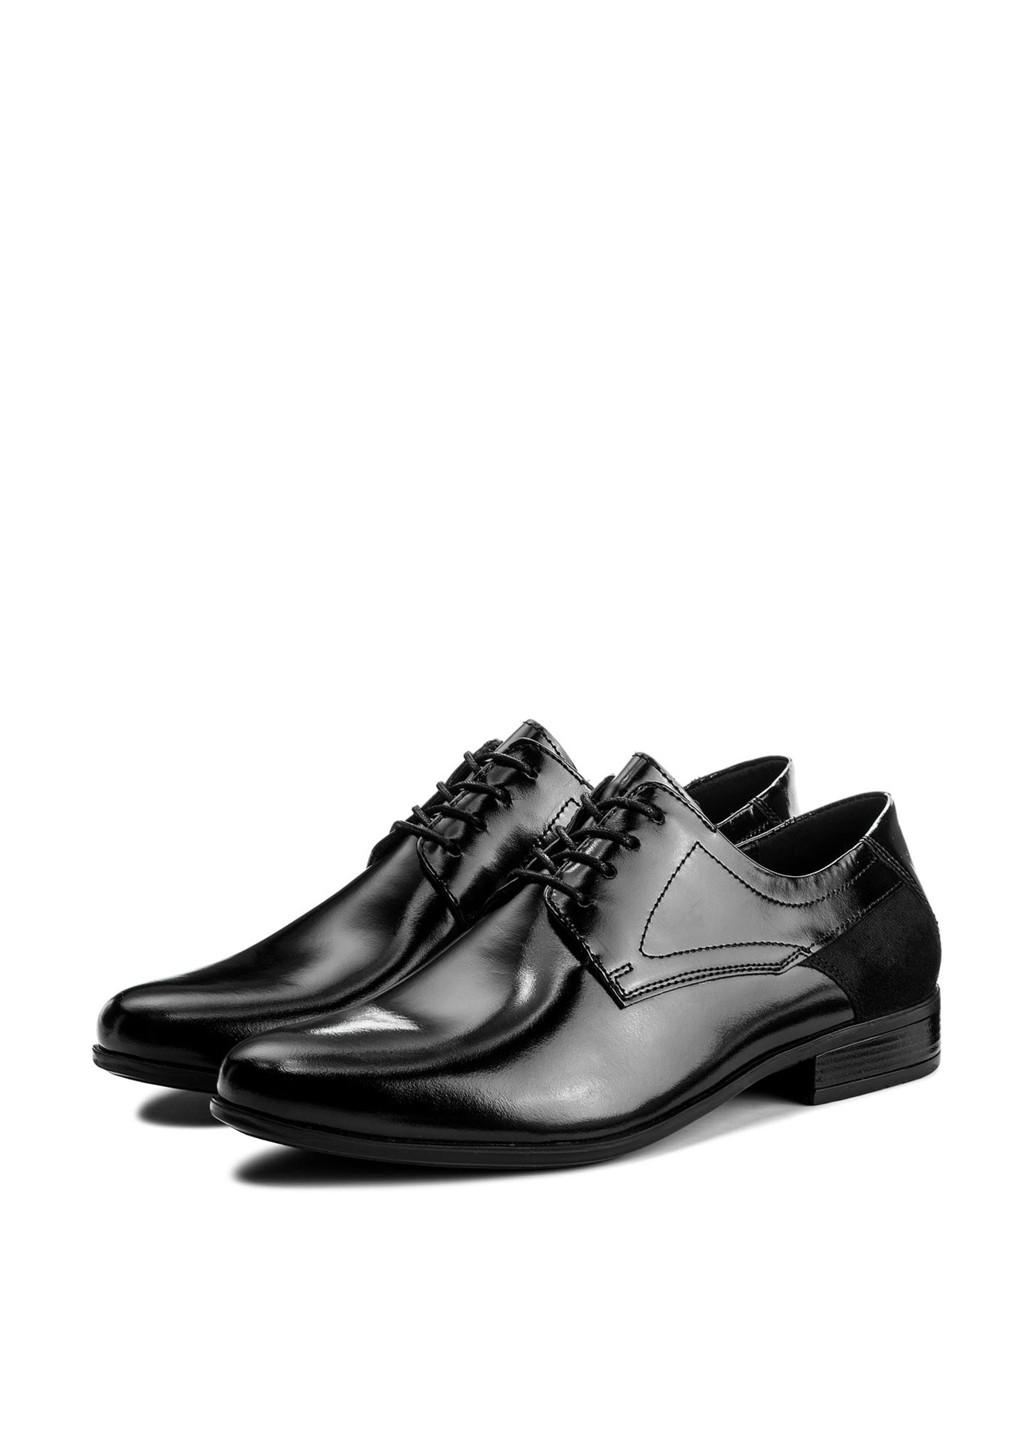 Черные кэжуал напівчеревики lasocki for men mi08-c346-384-03 Lasocki for men на шнурках